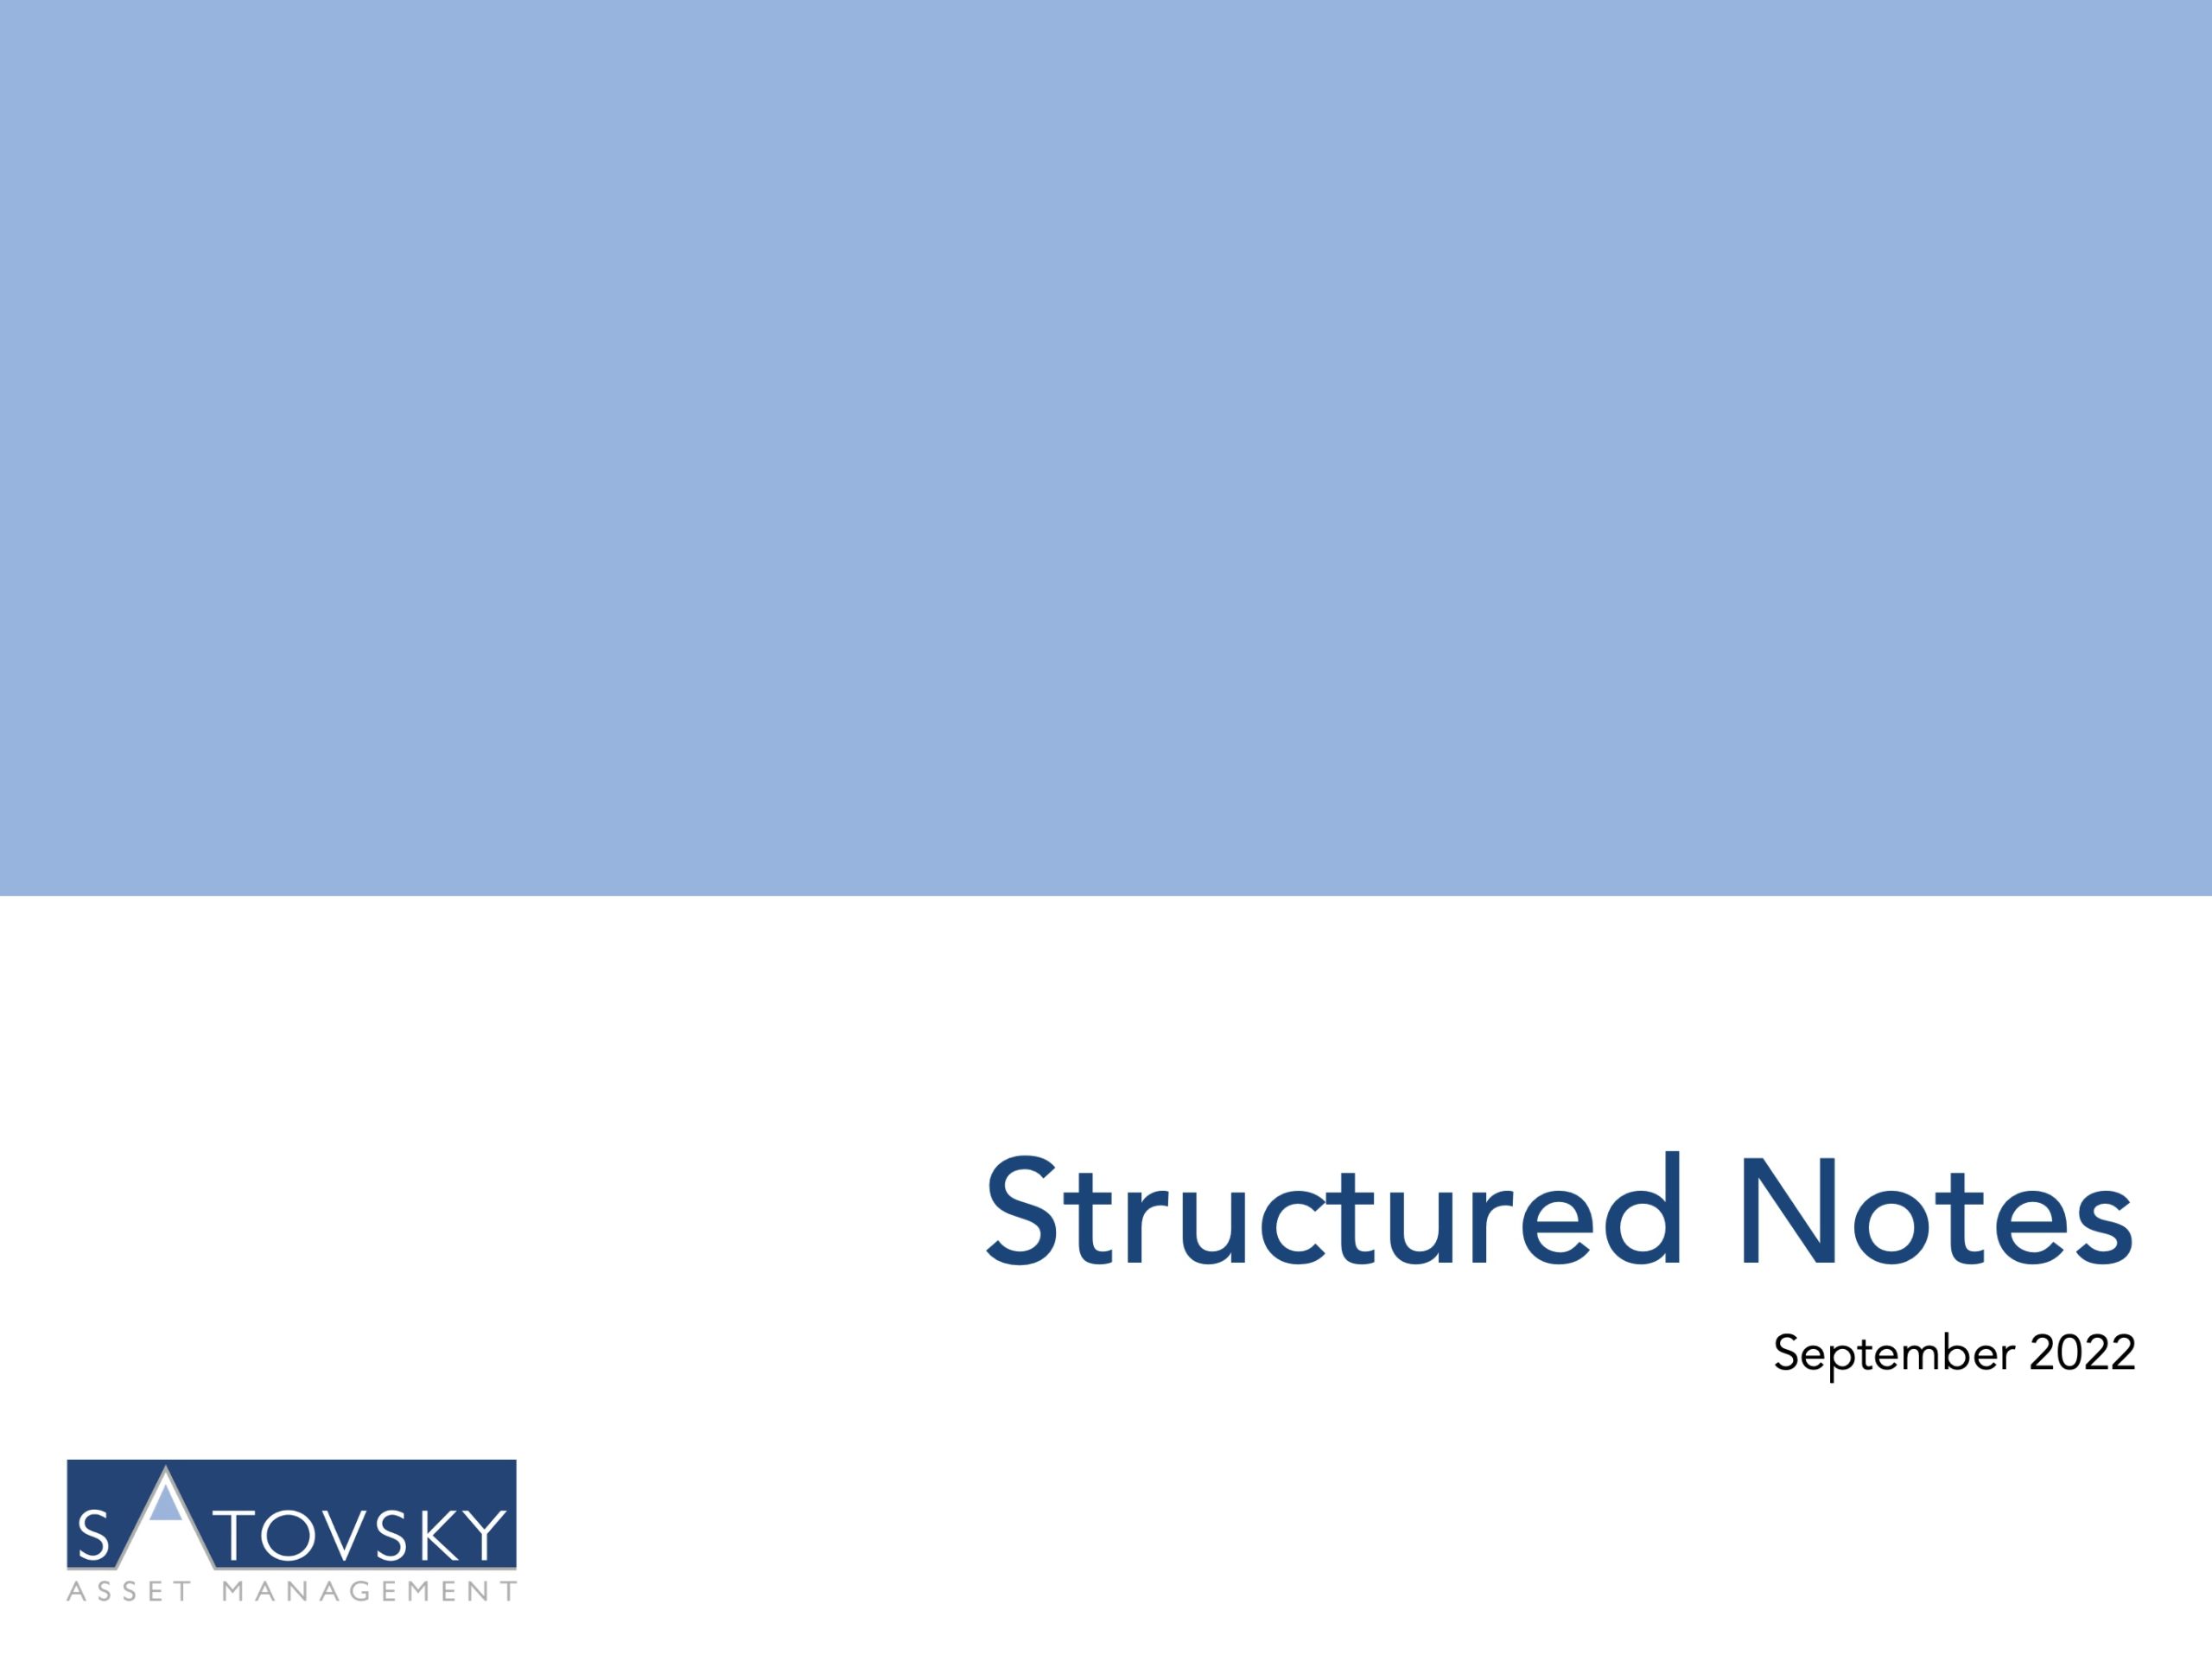 , Structured Notes, Satovsky Asset Management